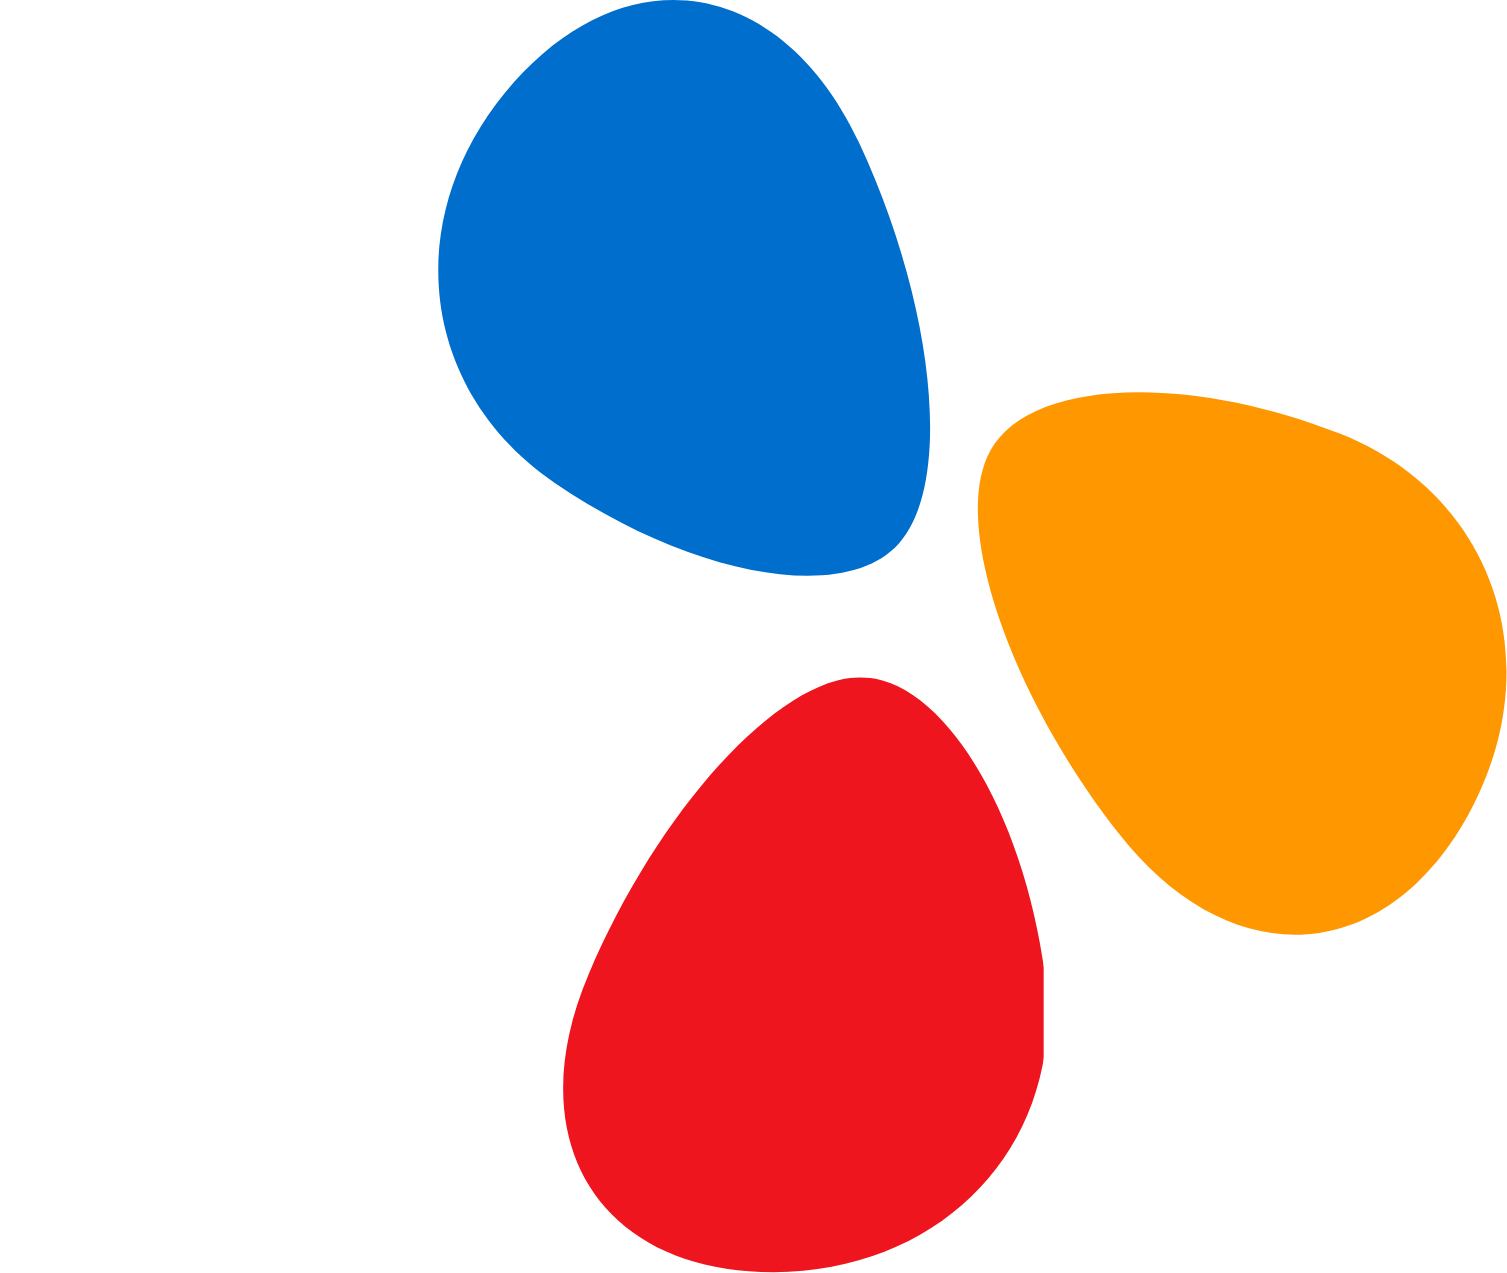 CJ Group logo large for dark backgrounds (transparent PNG)